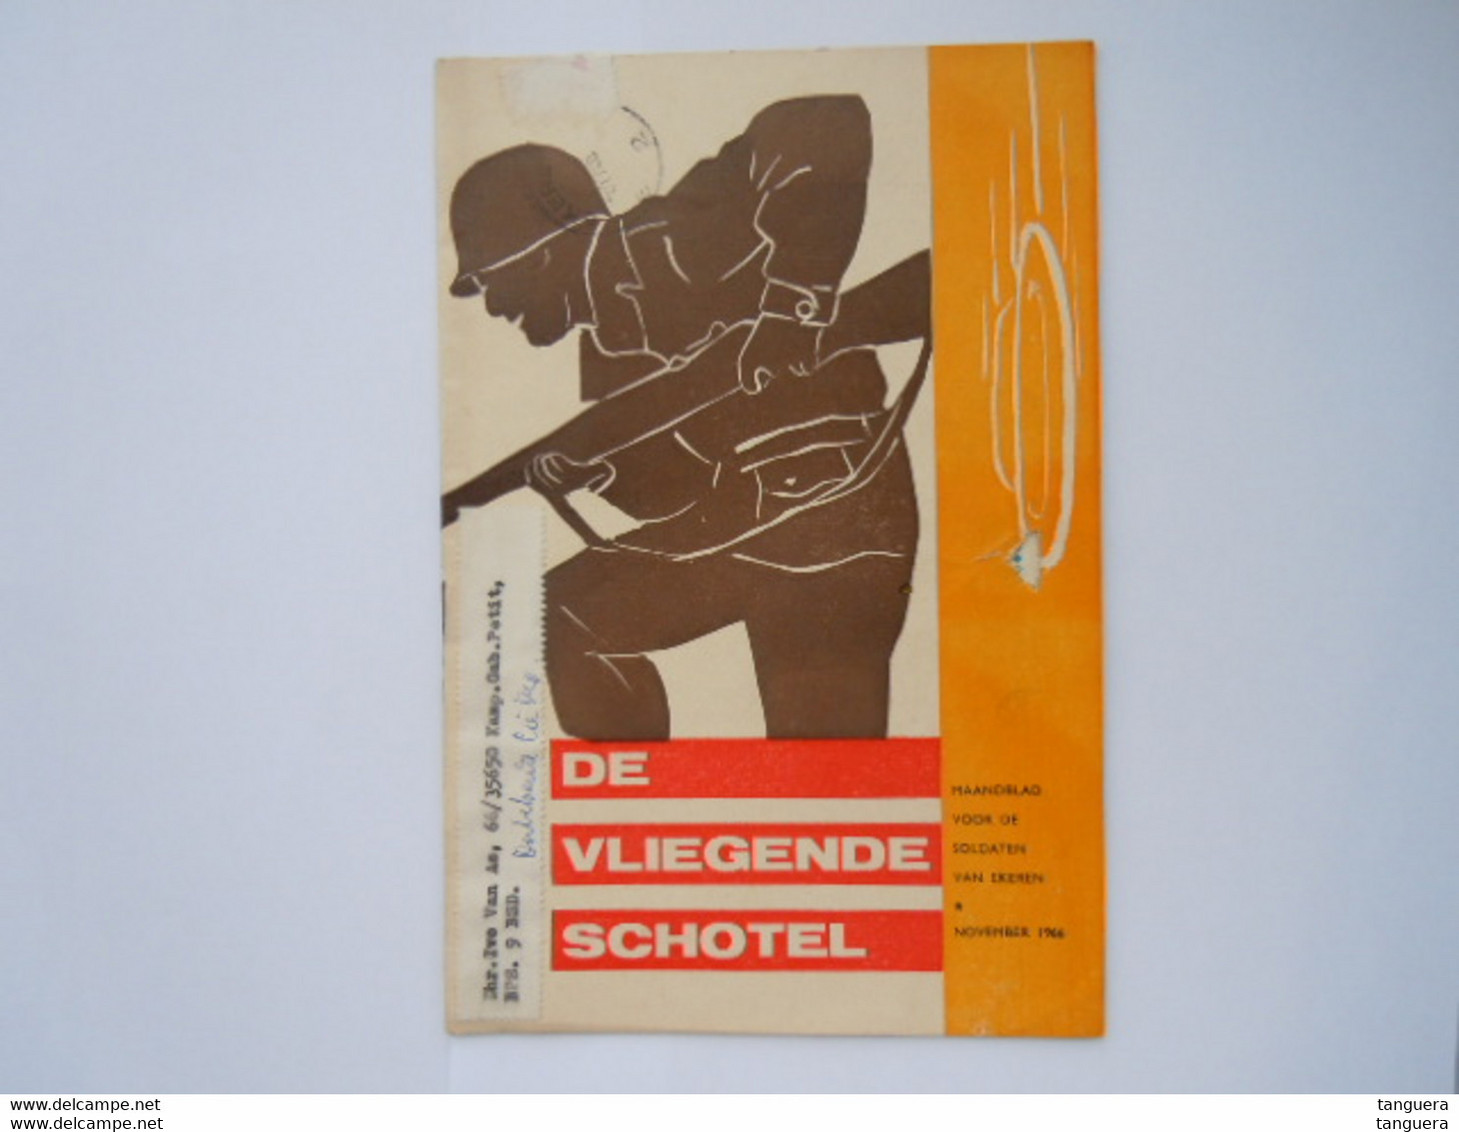 De Vliegende Schotel Maandblad Voor De Soldaten Van Ekeren November 1966 - Dutch